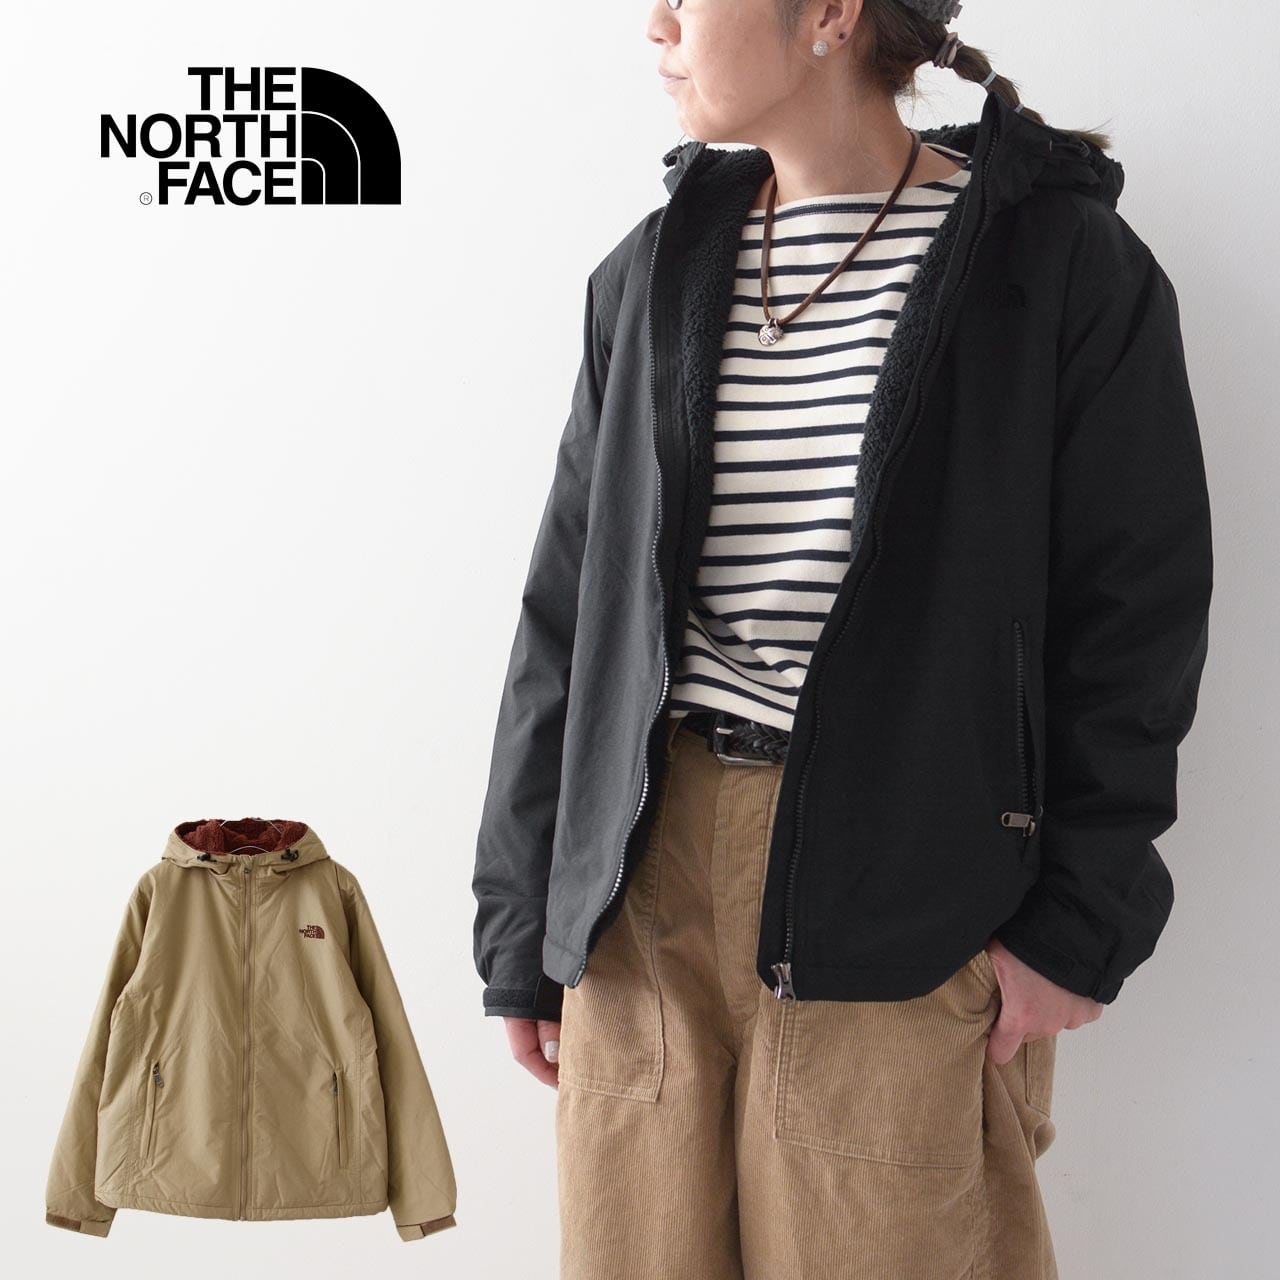 THE NORTH FACE [ザ・ノースフェイス正規代理店] W's Compact Nomad